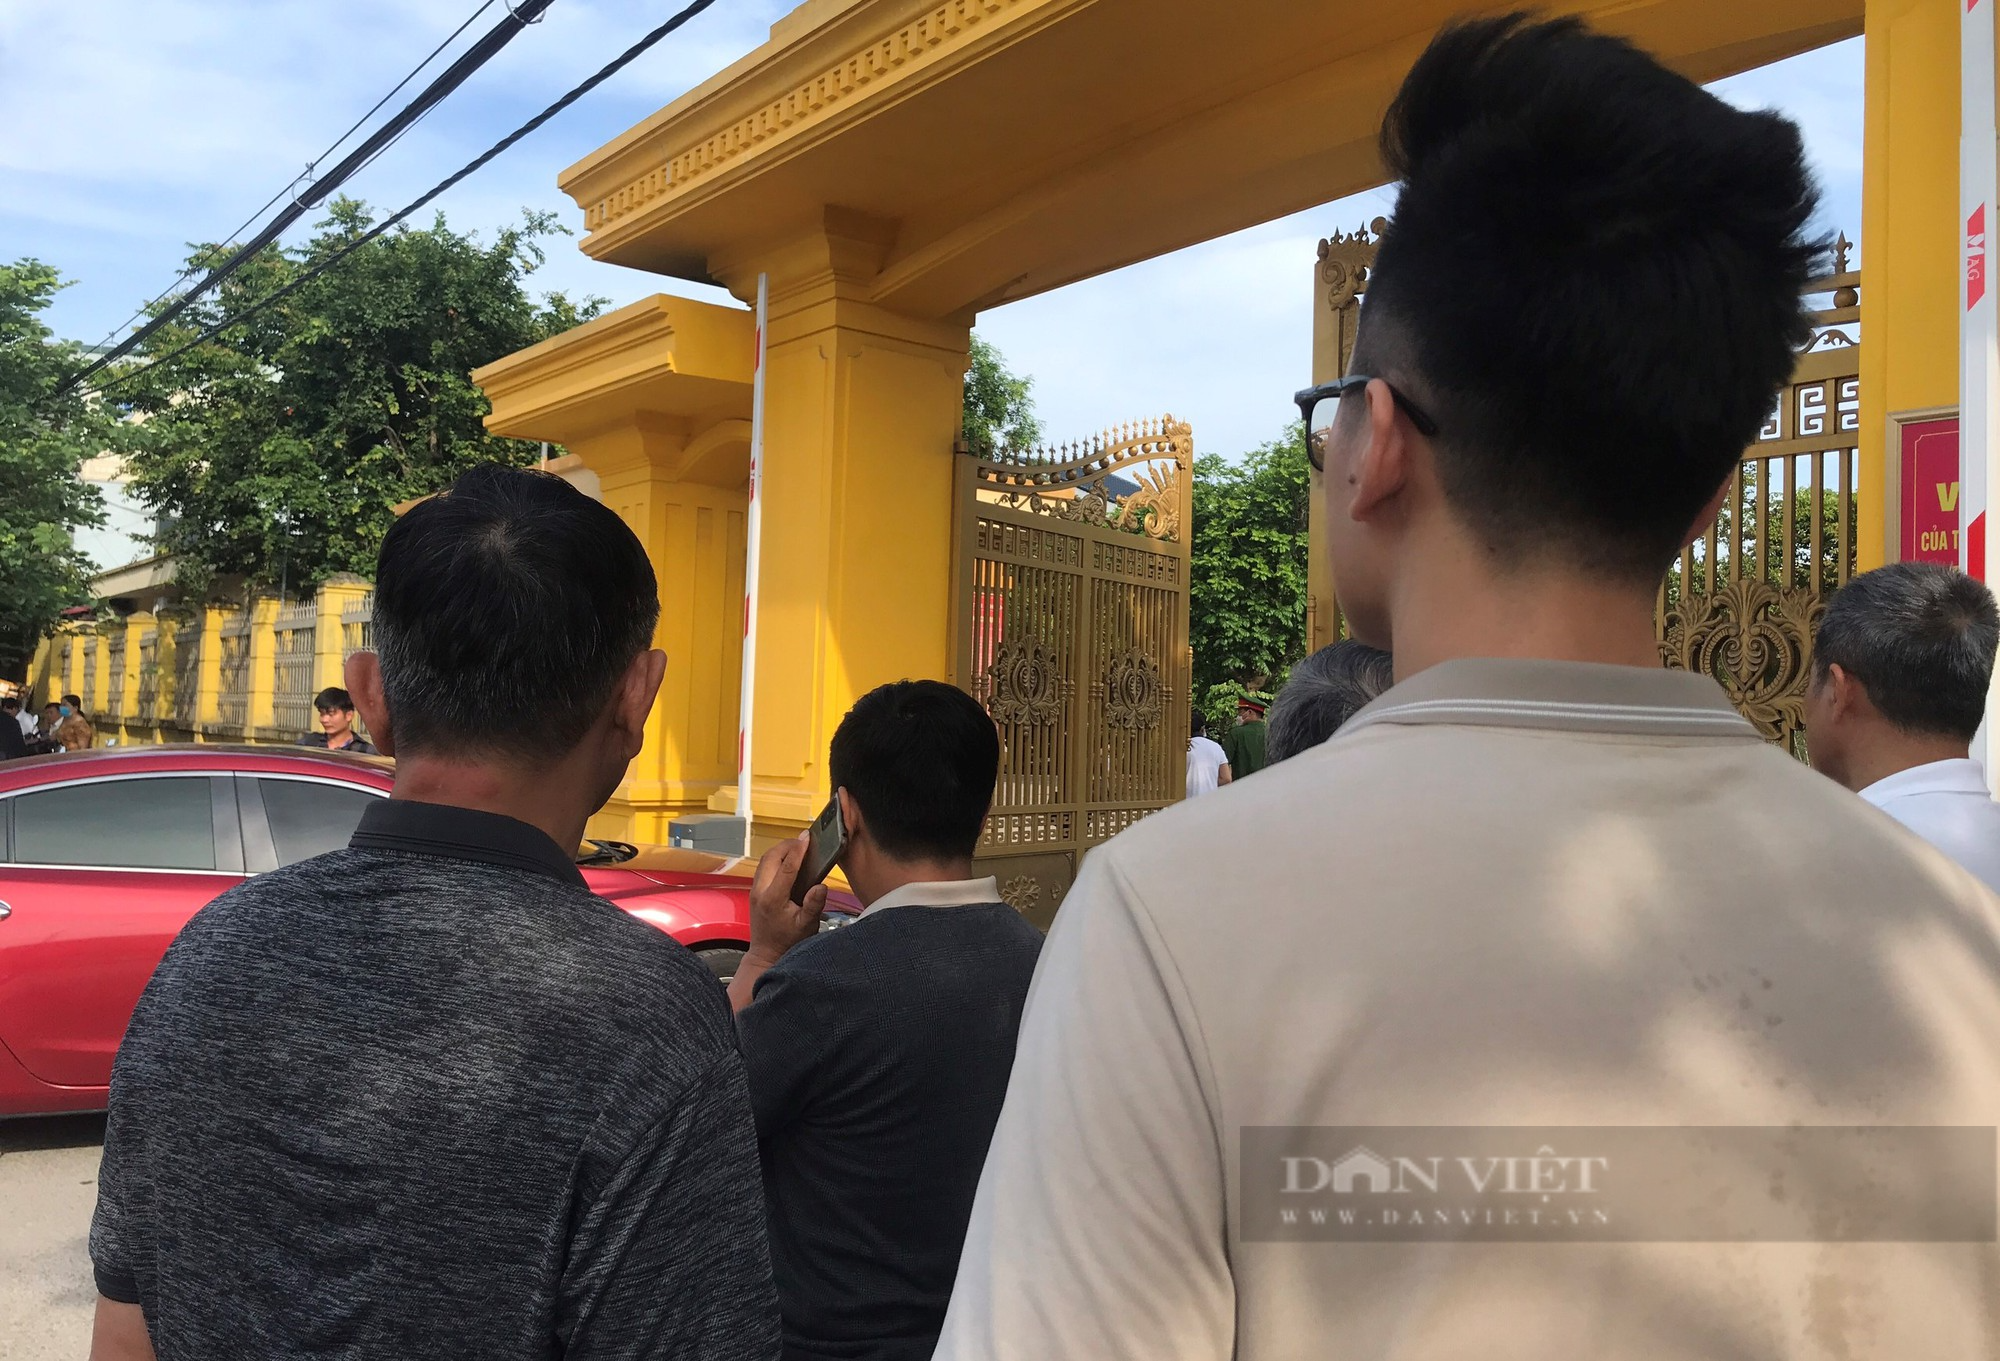 Hàng xóm, họ hàng chờ ngày cô giáo Lê Thị Dung trở về sau bản án phúc thẩm - Ảnh 3.